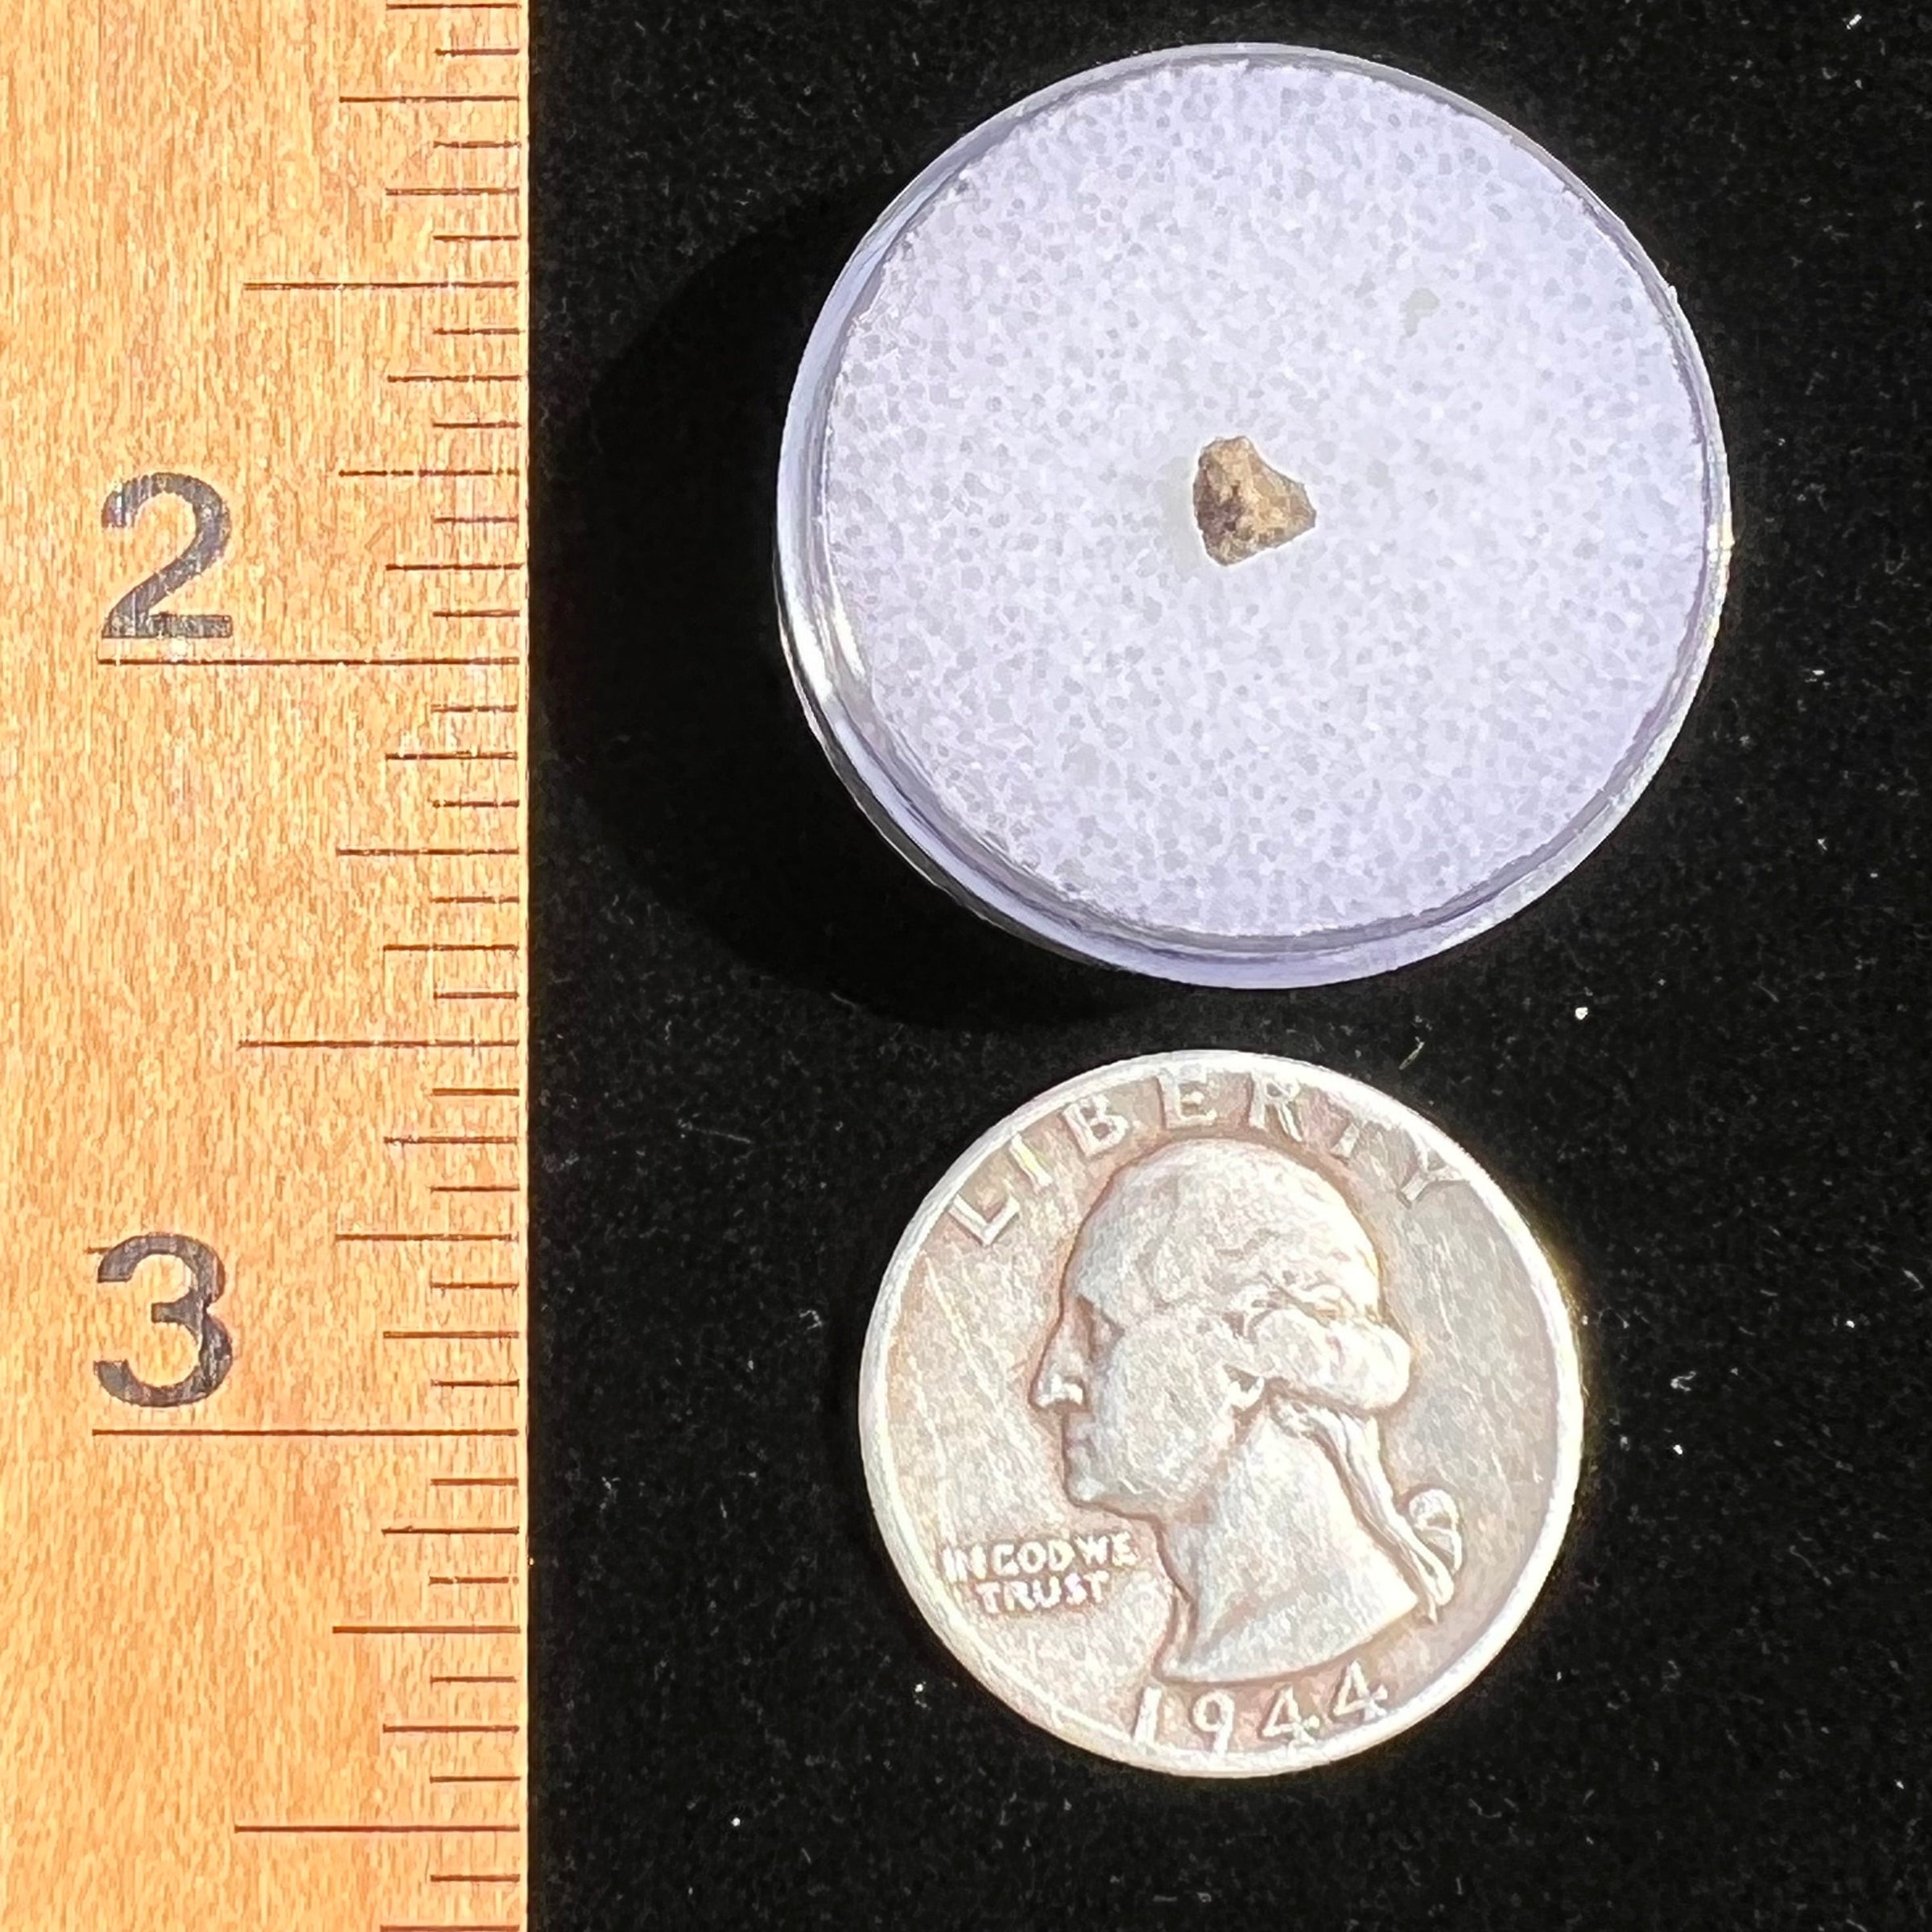 NWA 7397 Mars Meteorite tiny fragment #73